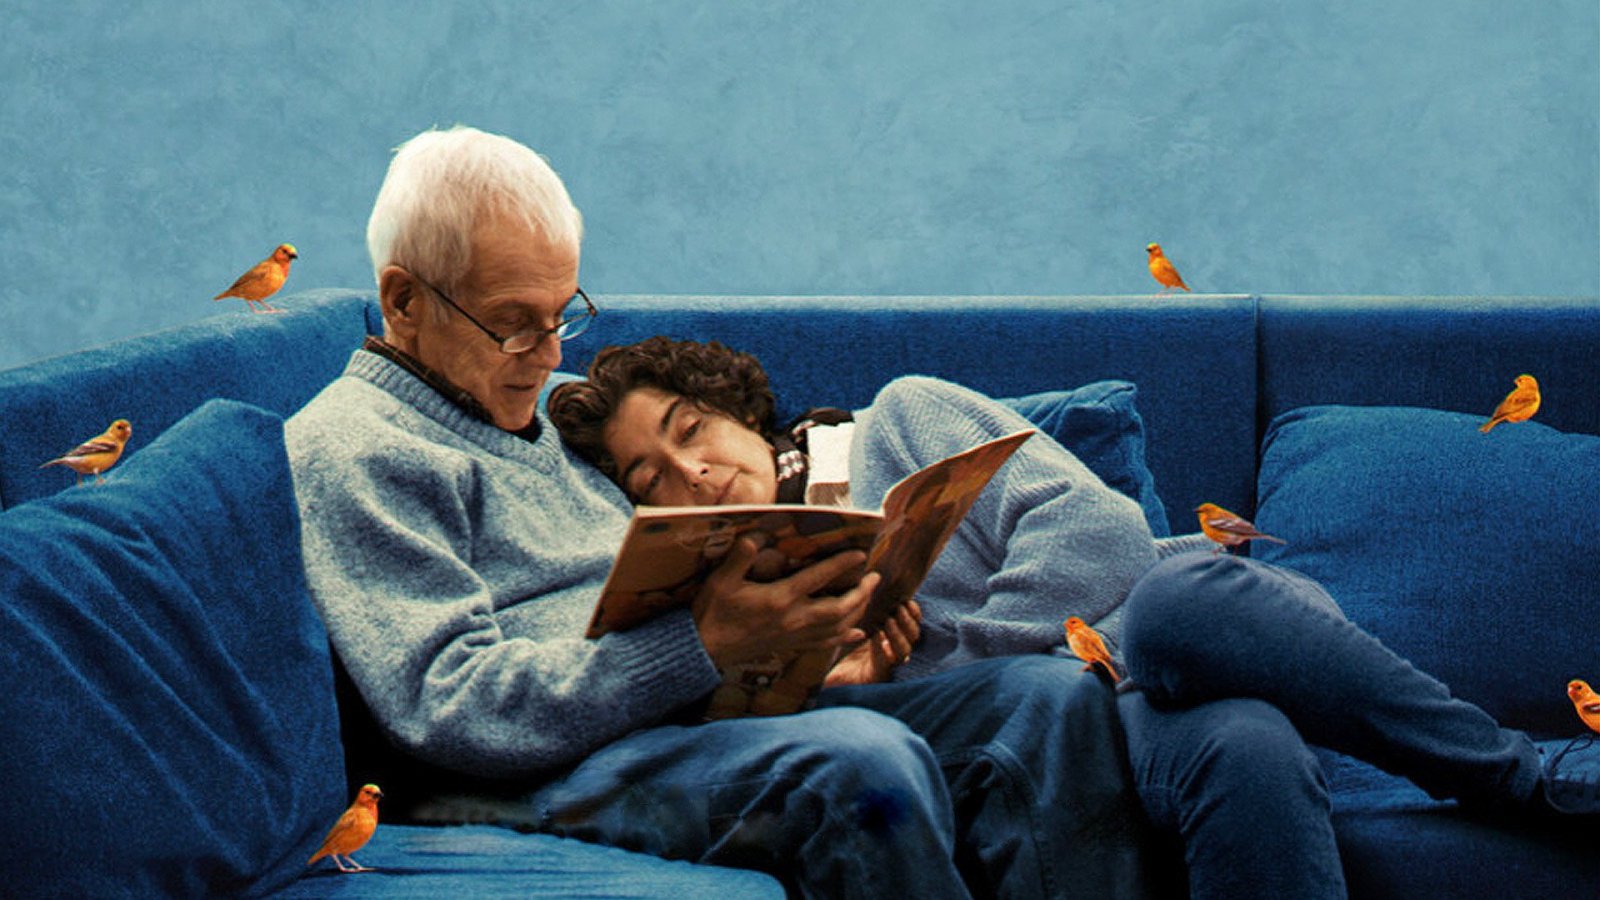 Augusto Góngora y Maite Alberdi están sentados en un sillón, mientras leen un libro. A él se le nota muy concentrado, mientras que ella está relajada, apoyada en su pecho